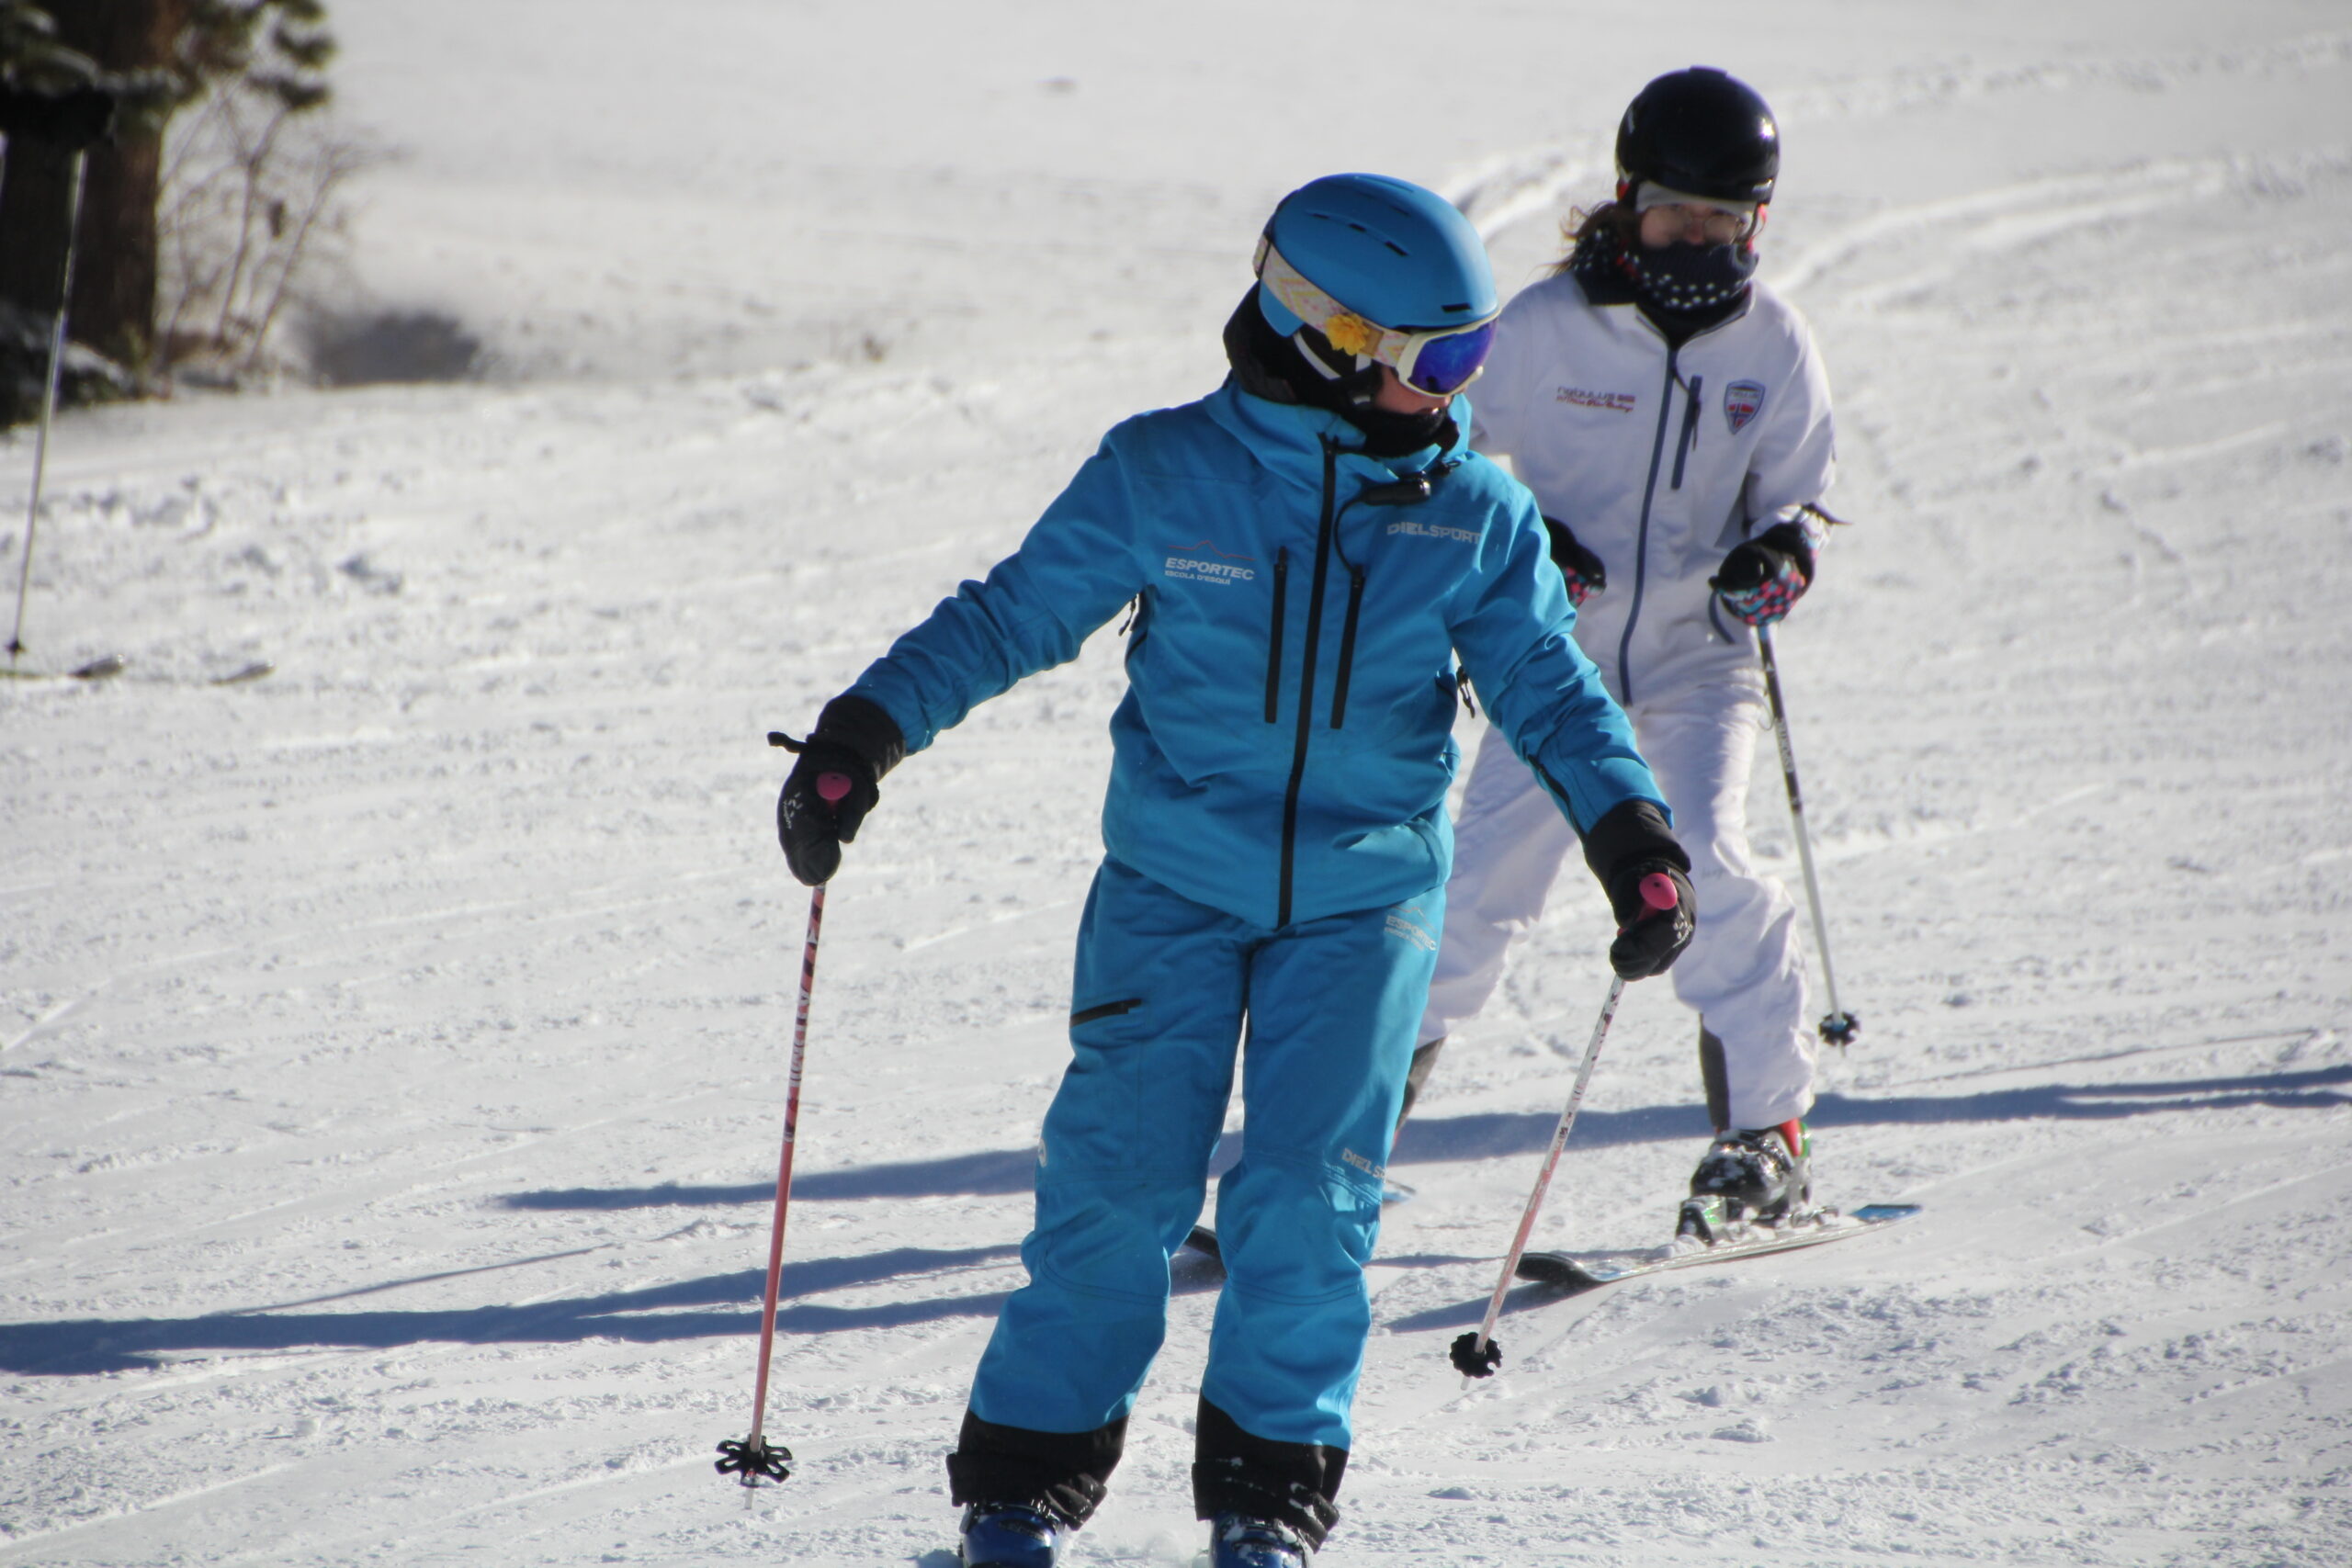 Classes particulars d’esquí a La Molina